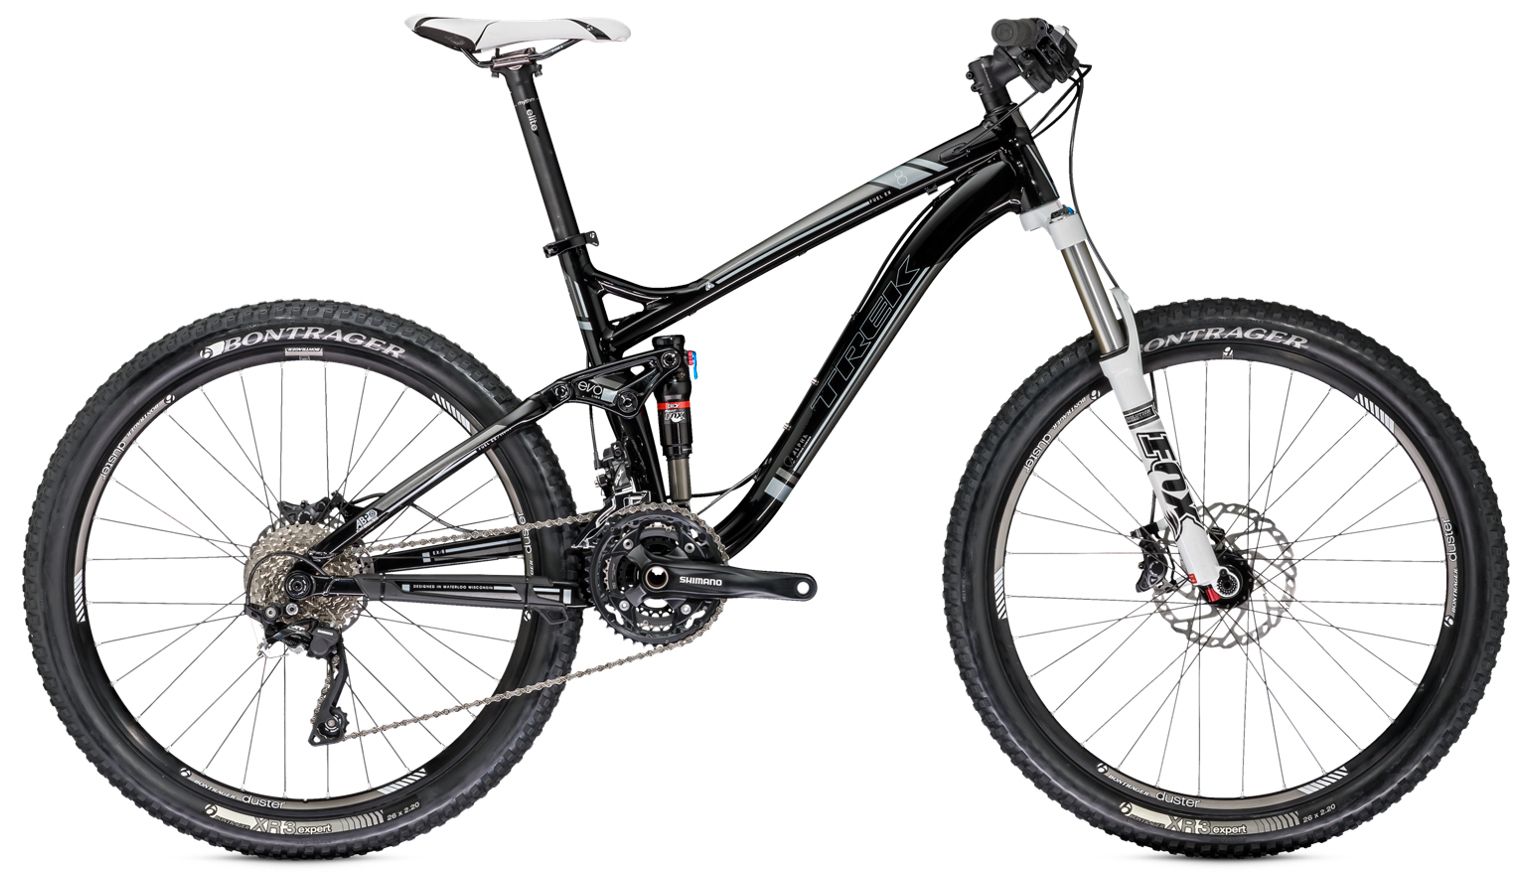  Отзывы о Горном велосипеде Trek Fuel EX 8 26 2014